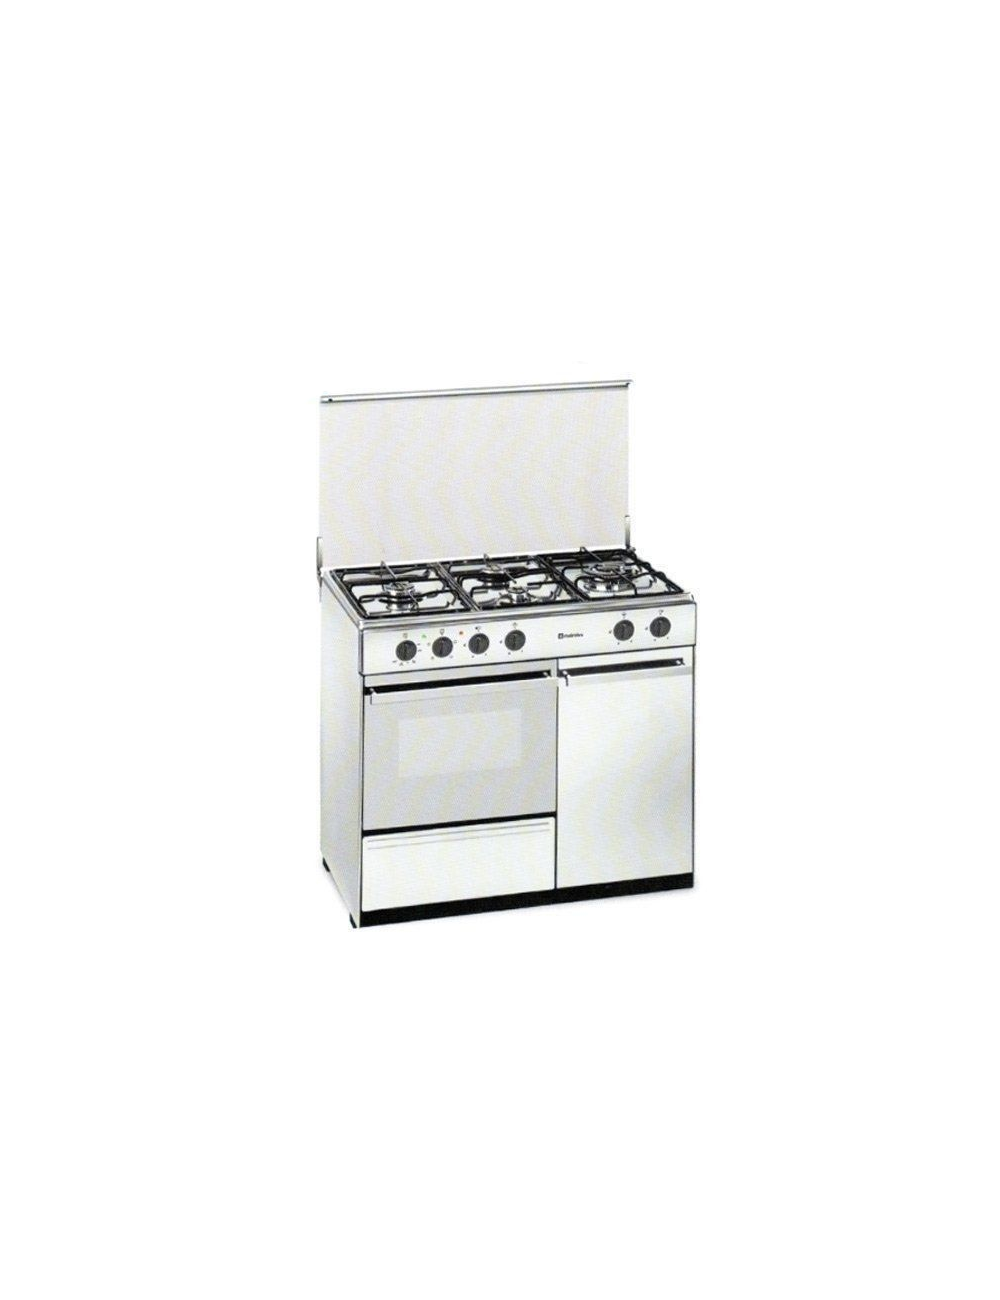 Cocina a gas MEIRELES E921 W - Horno eléctrico - Color blanco